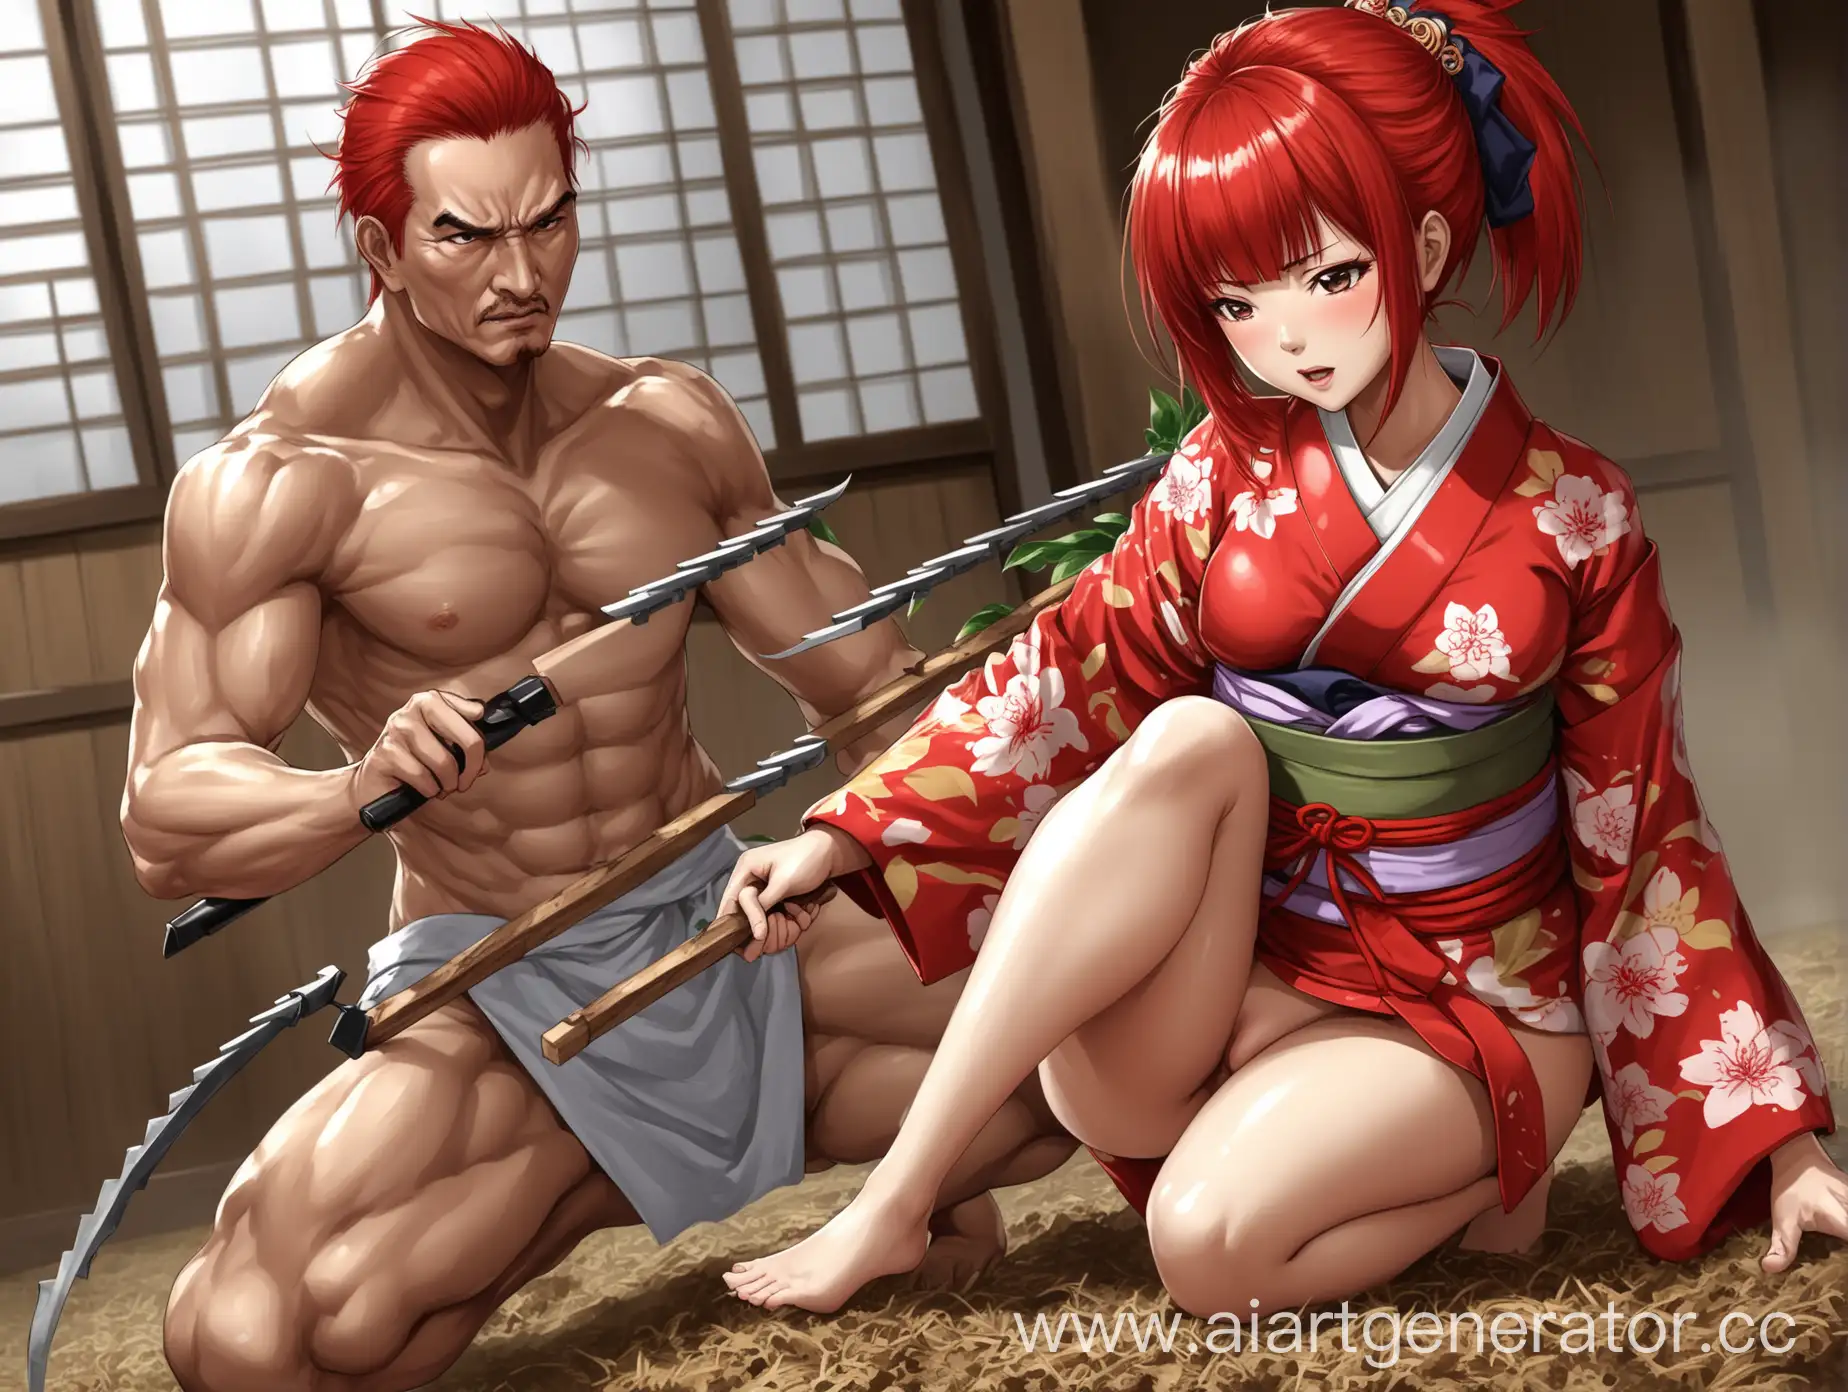 Мастер боевых исскуств, культиватор, девушка, сексуально, кимоно, рыжие волосы, азиатка, девочка
